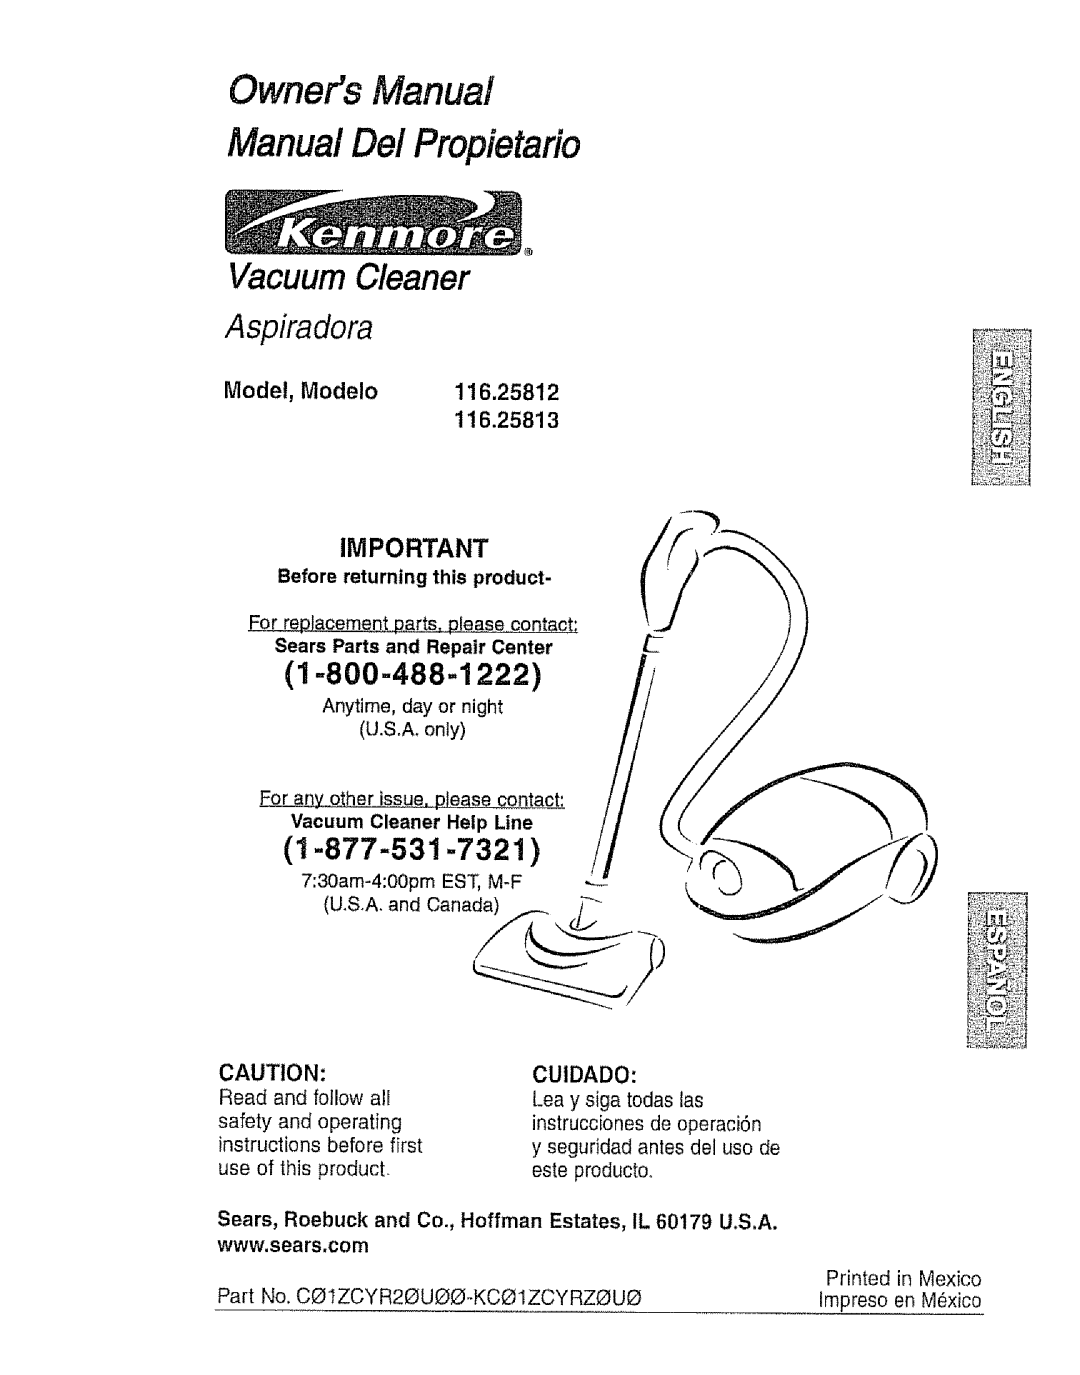 Kenmore 116.25812 owner manual 1-800-488-1222, 1-877-531-7321, Owners Manual Manual Dei Propietario 